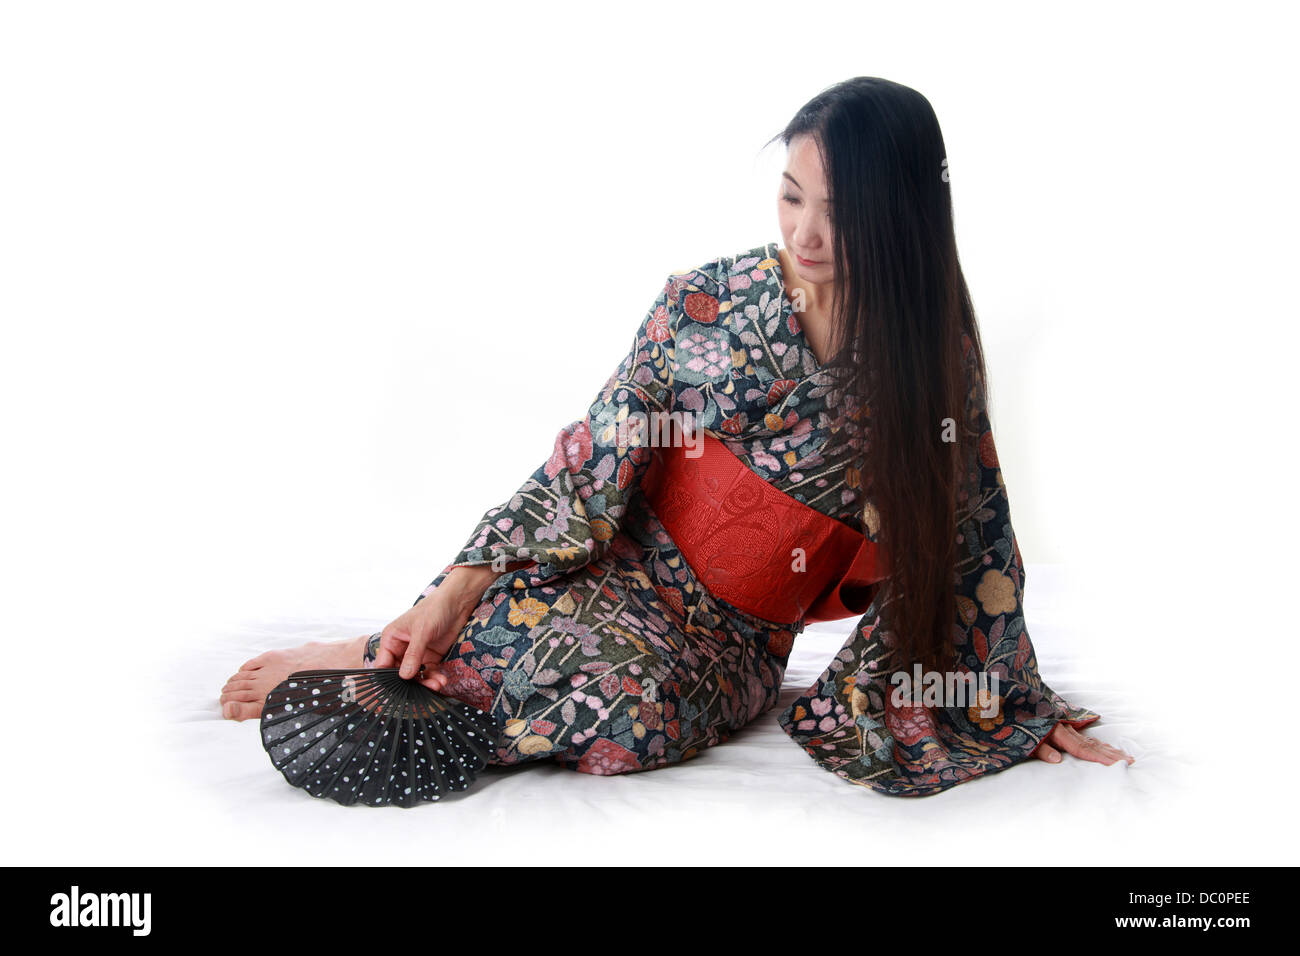 Japanerin sitzen auf dem Boden einen traditionellen blau und rot gemusterten Kimono trägt und hält ein Fan Stockfoto